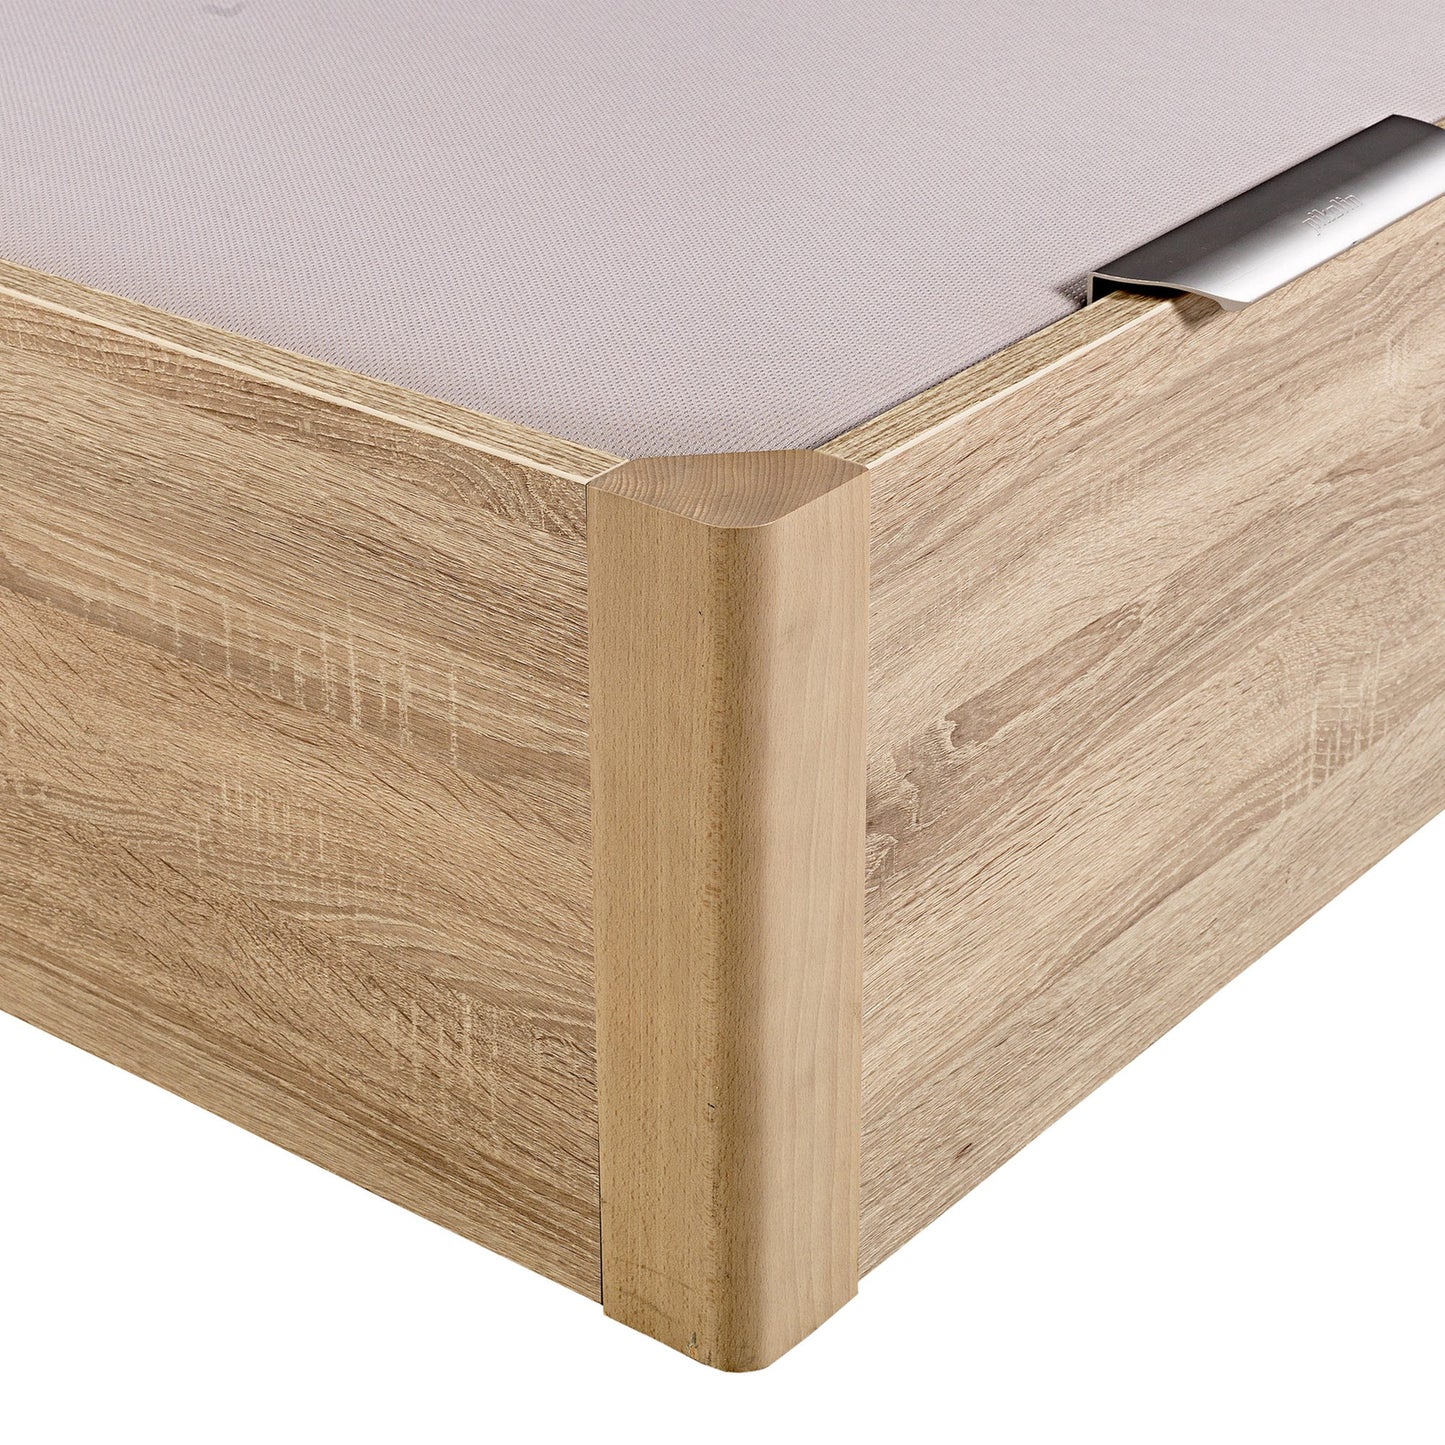 Canapé abatible de madera de alta capacidad tapa doble de color natural - DESIGN - 160x182